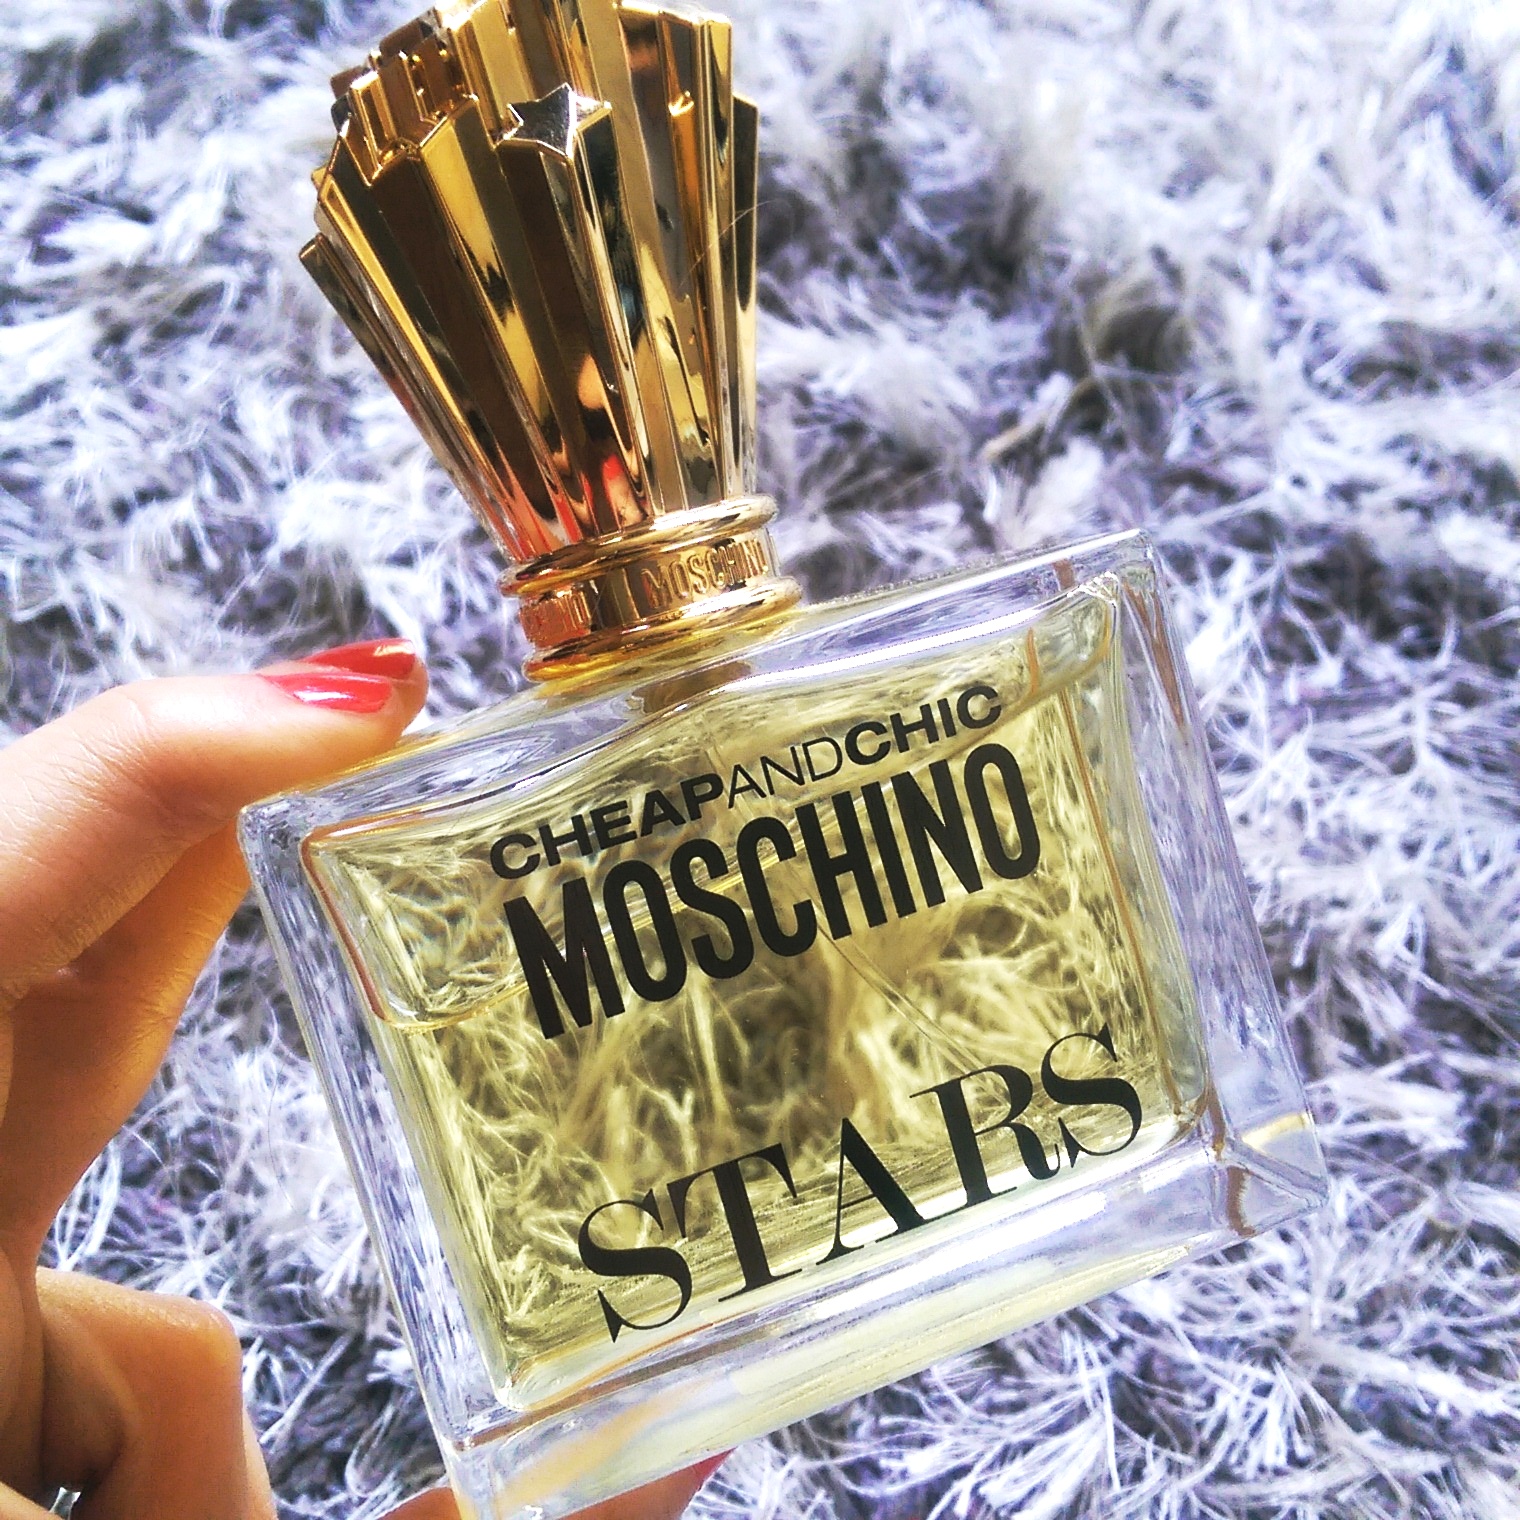 moschino stars perfume review